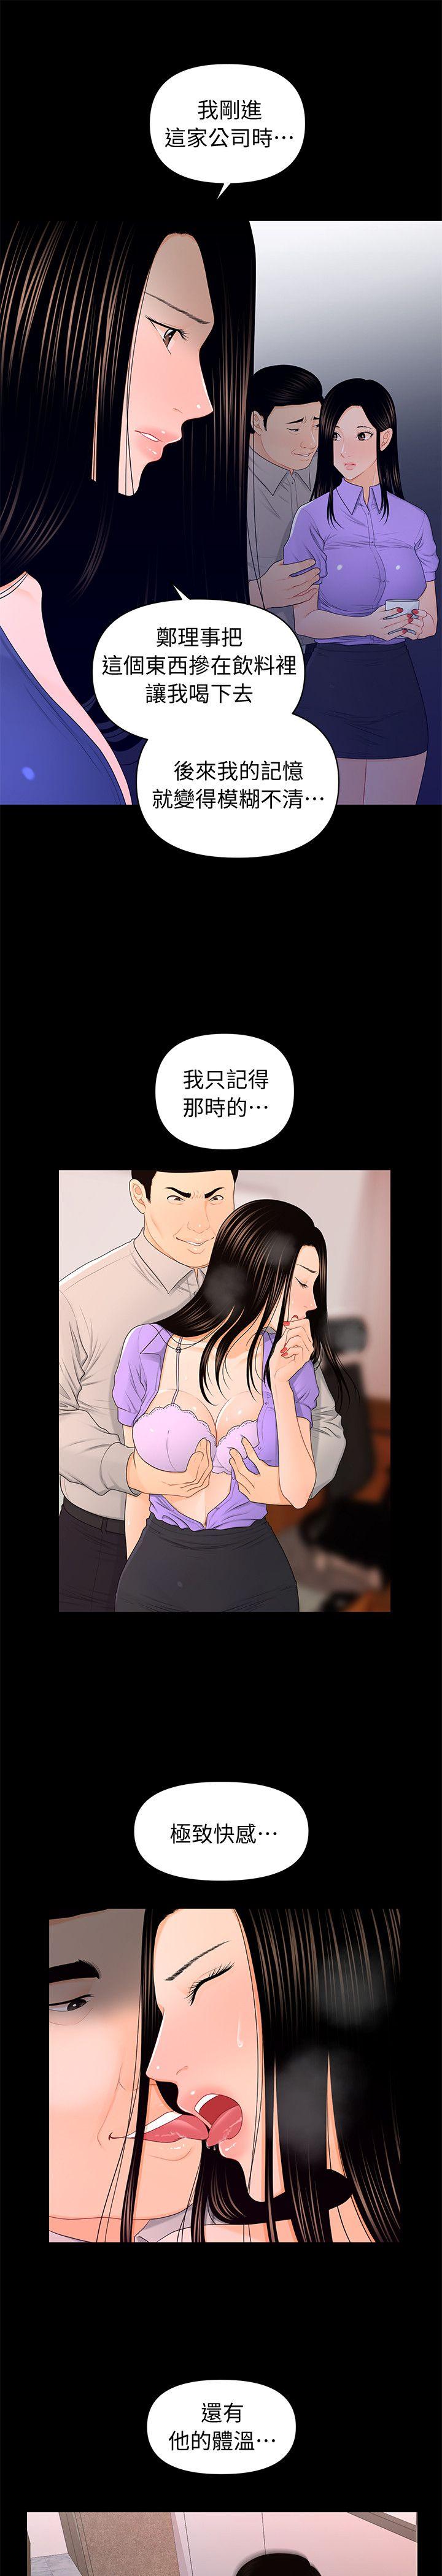 韩国污漫画 秘書的潛規則 第18话-被理事下药后… 7